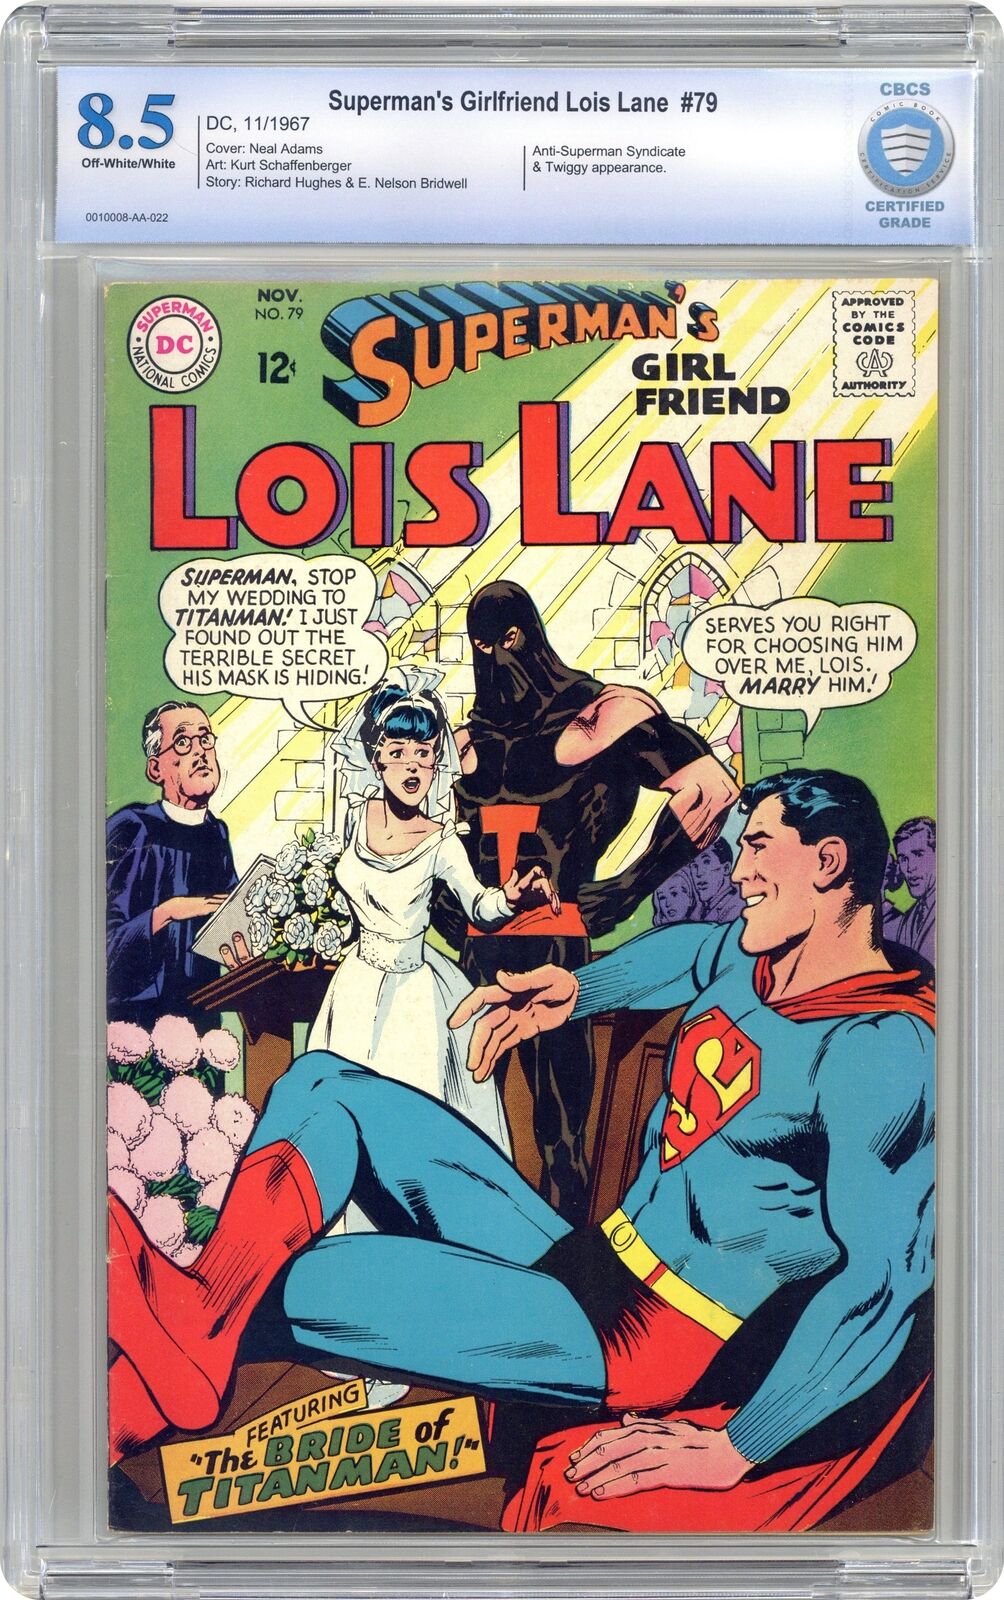 Superman's Girlfriend Lois Lane #79 CBCS 8.5 1967 0010008-AA-022